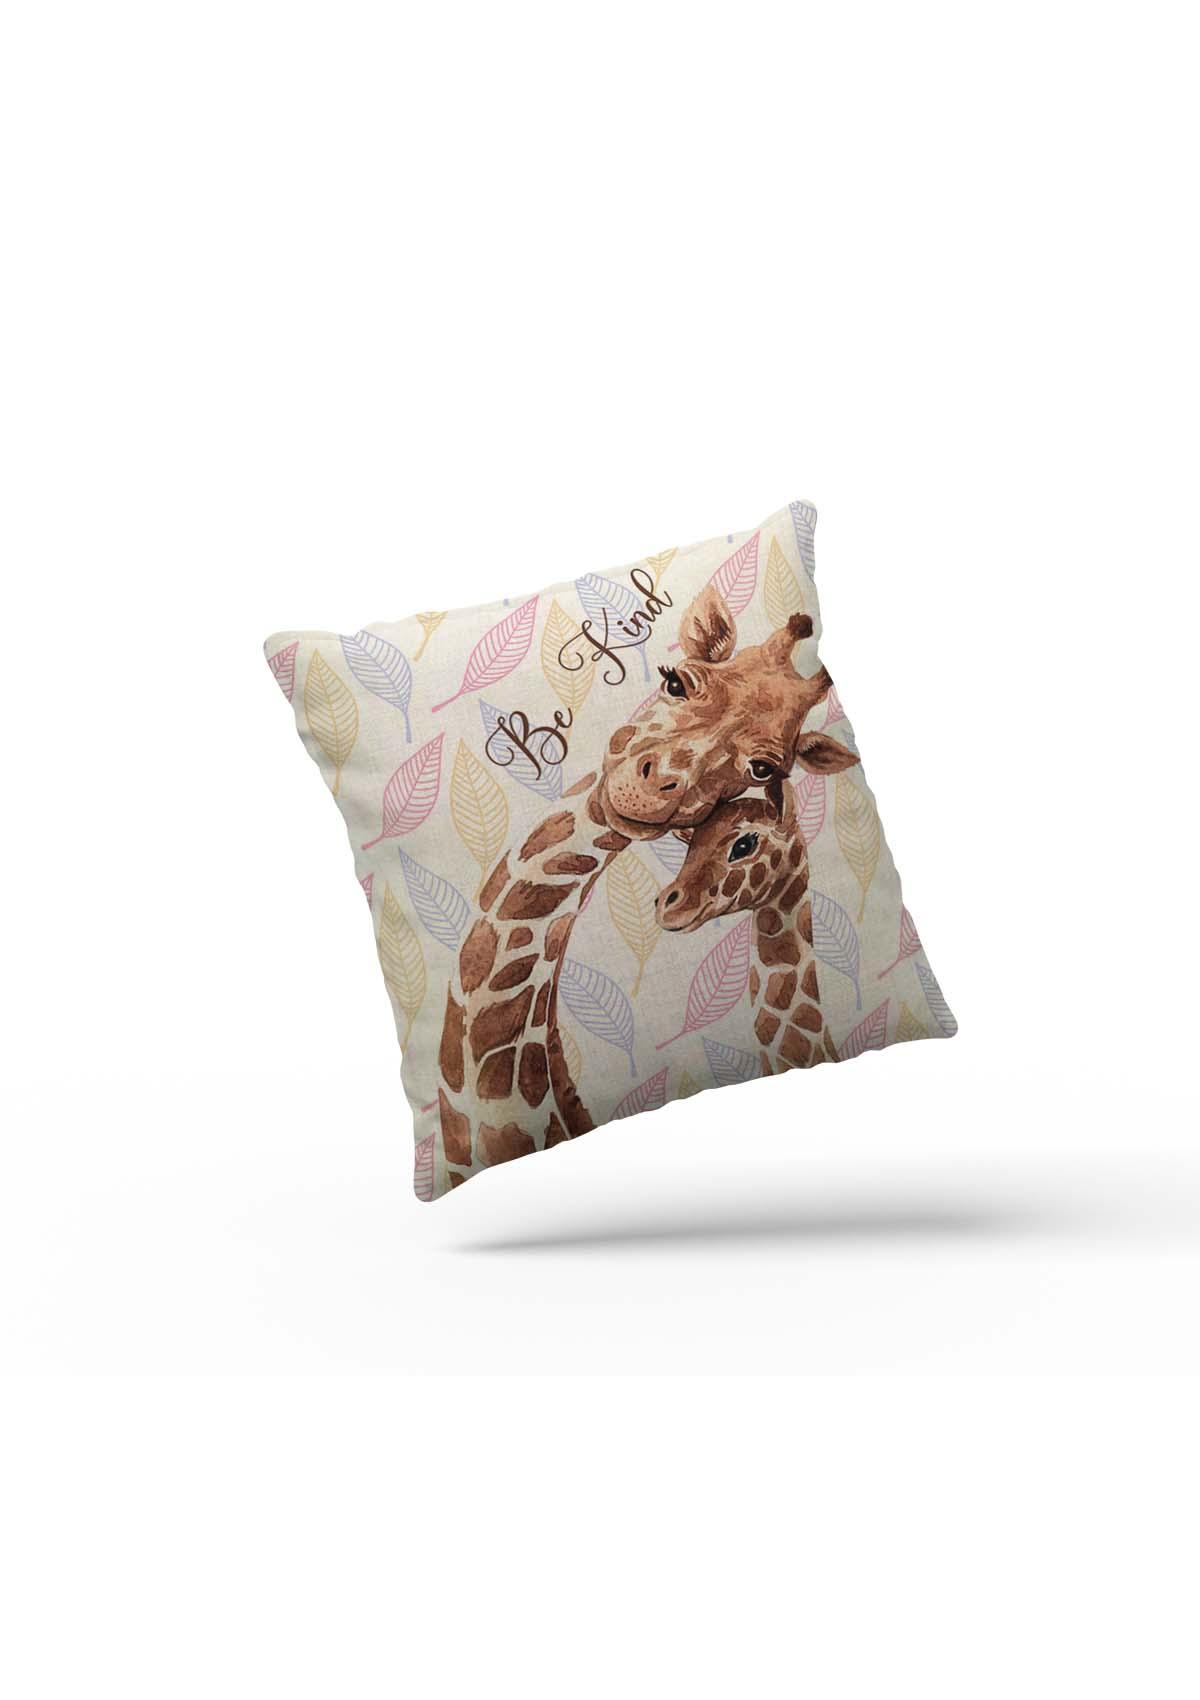 giraffe cushion cover uk